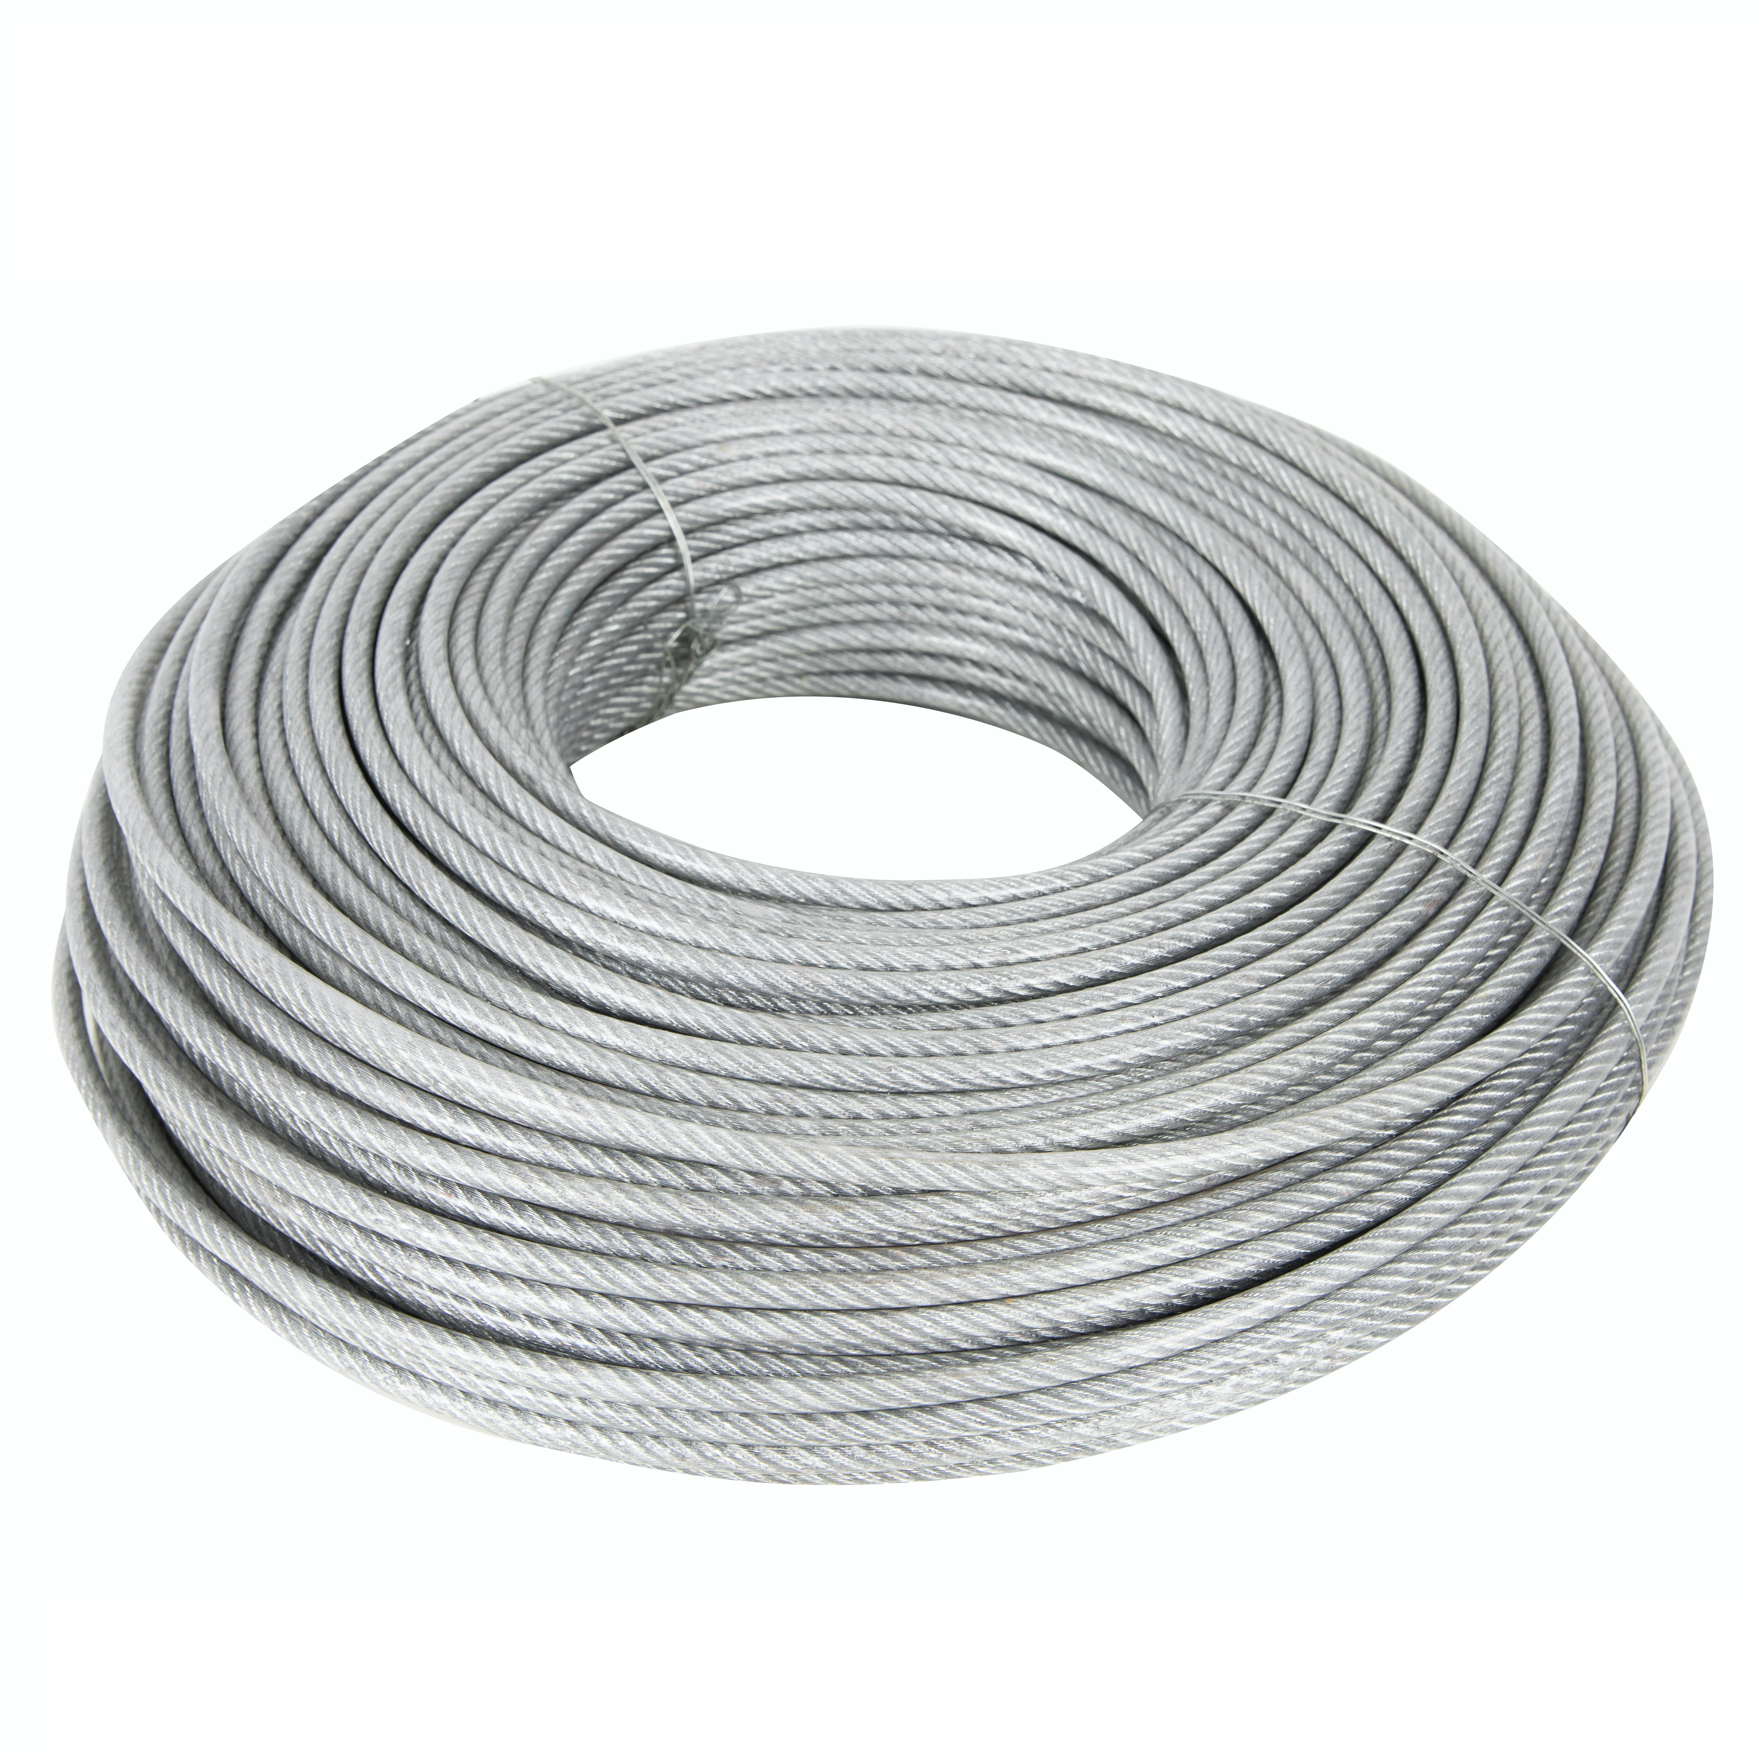 Cablu otel zincat plastifiat, grosime 3 MM, rola 100m, Liderman, sufa metalica